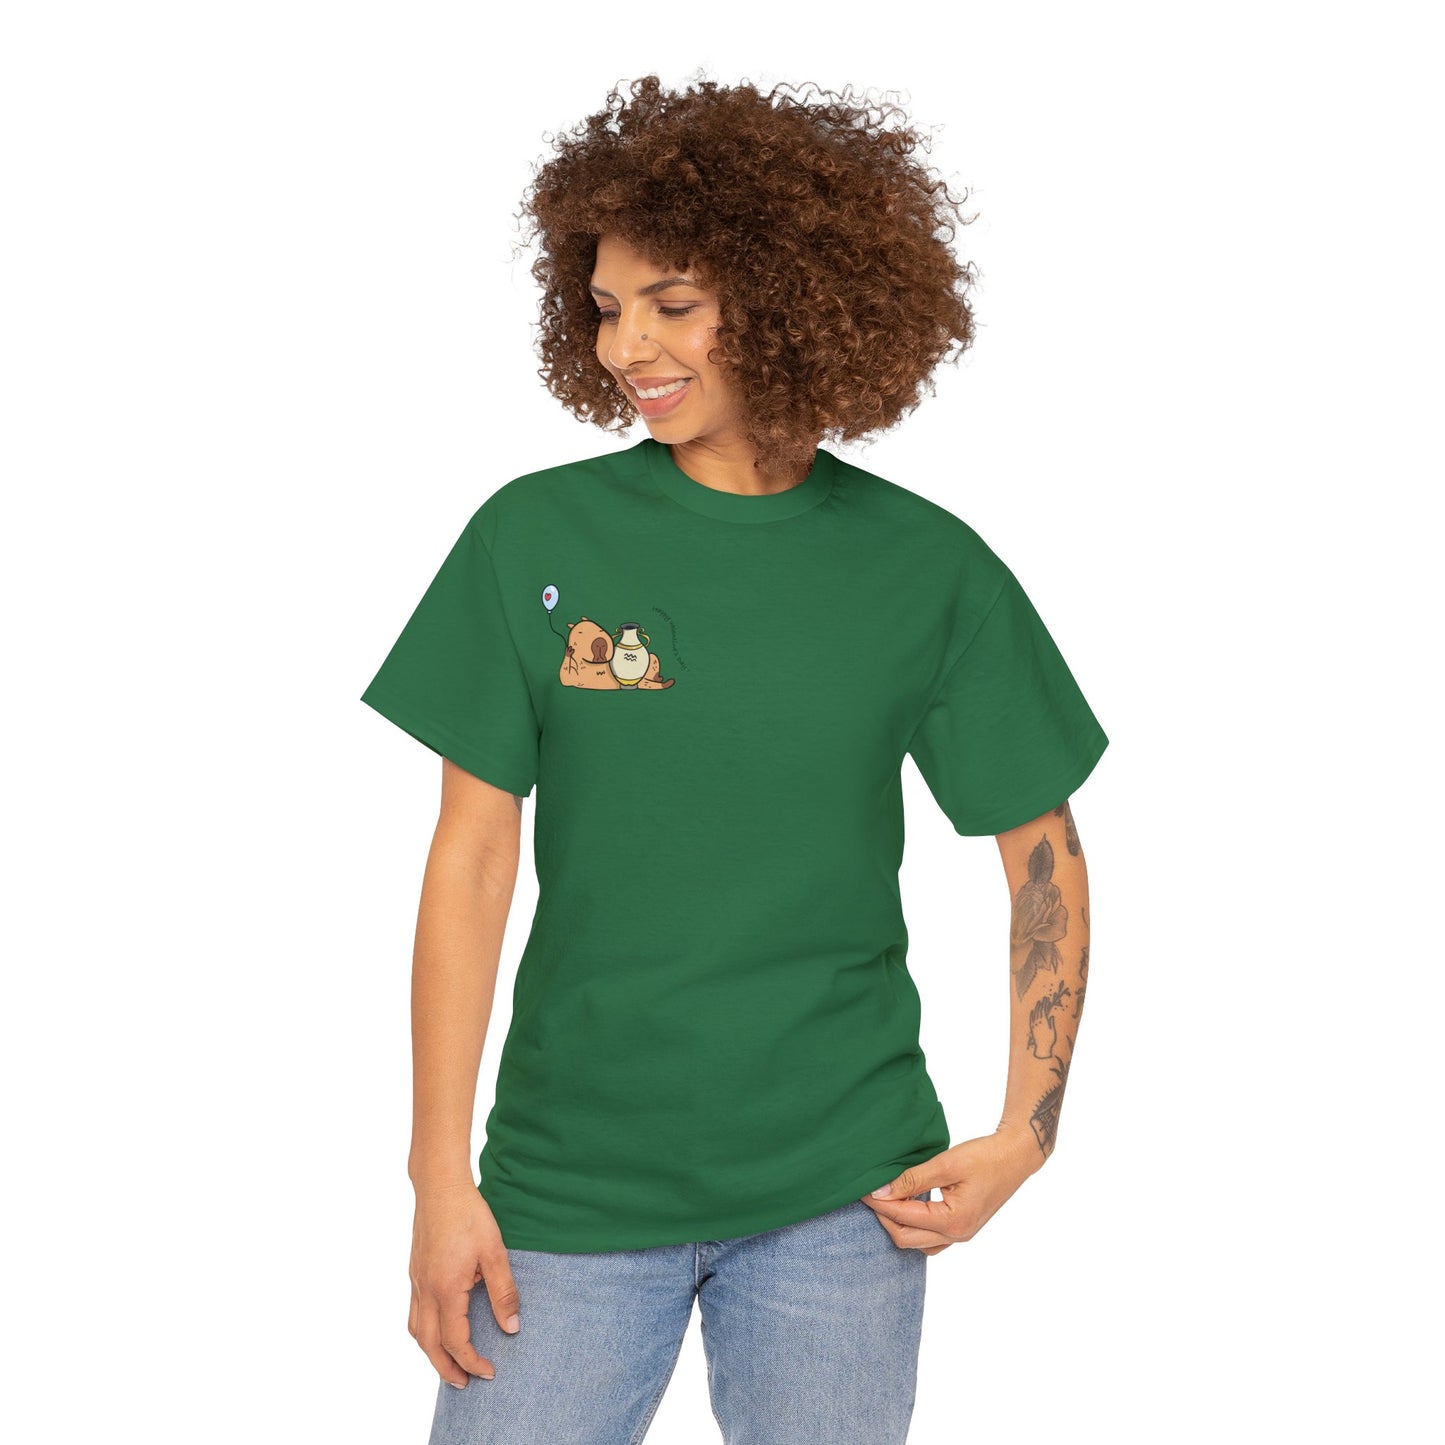 Cancer T-shirt Women